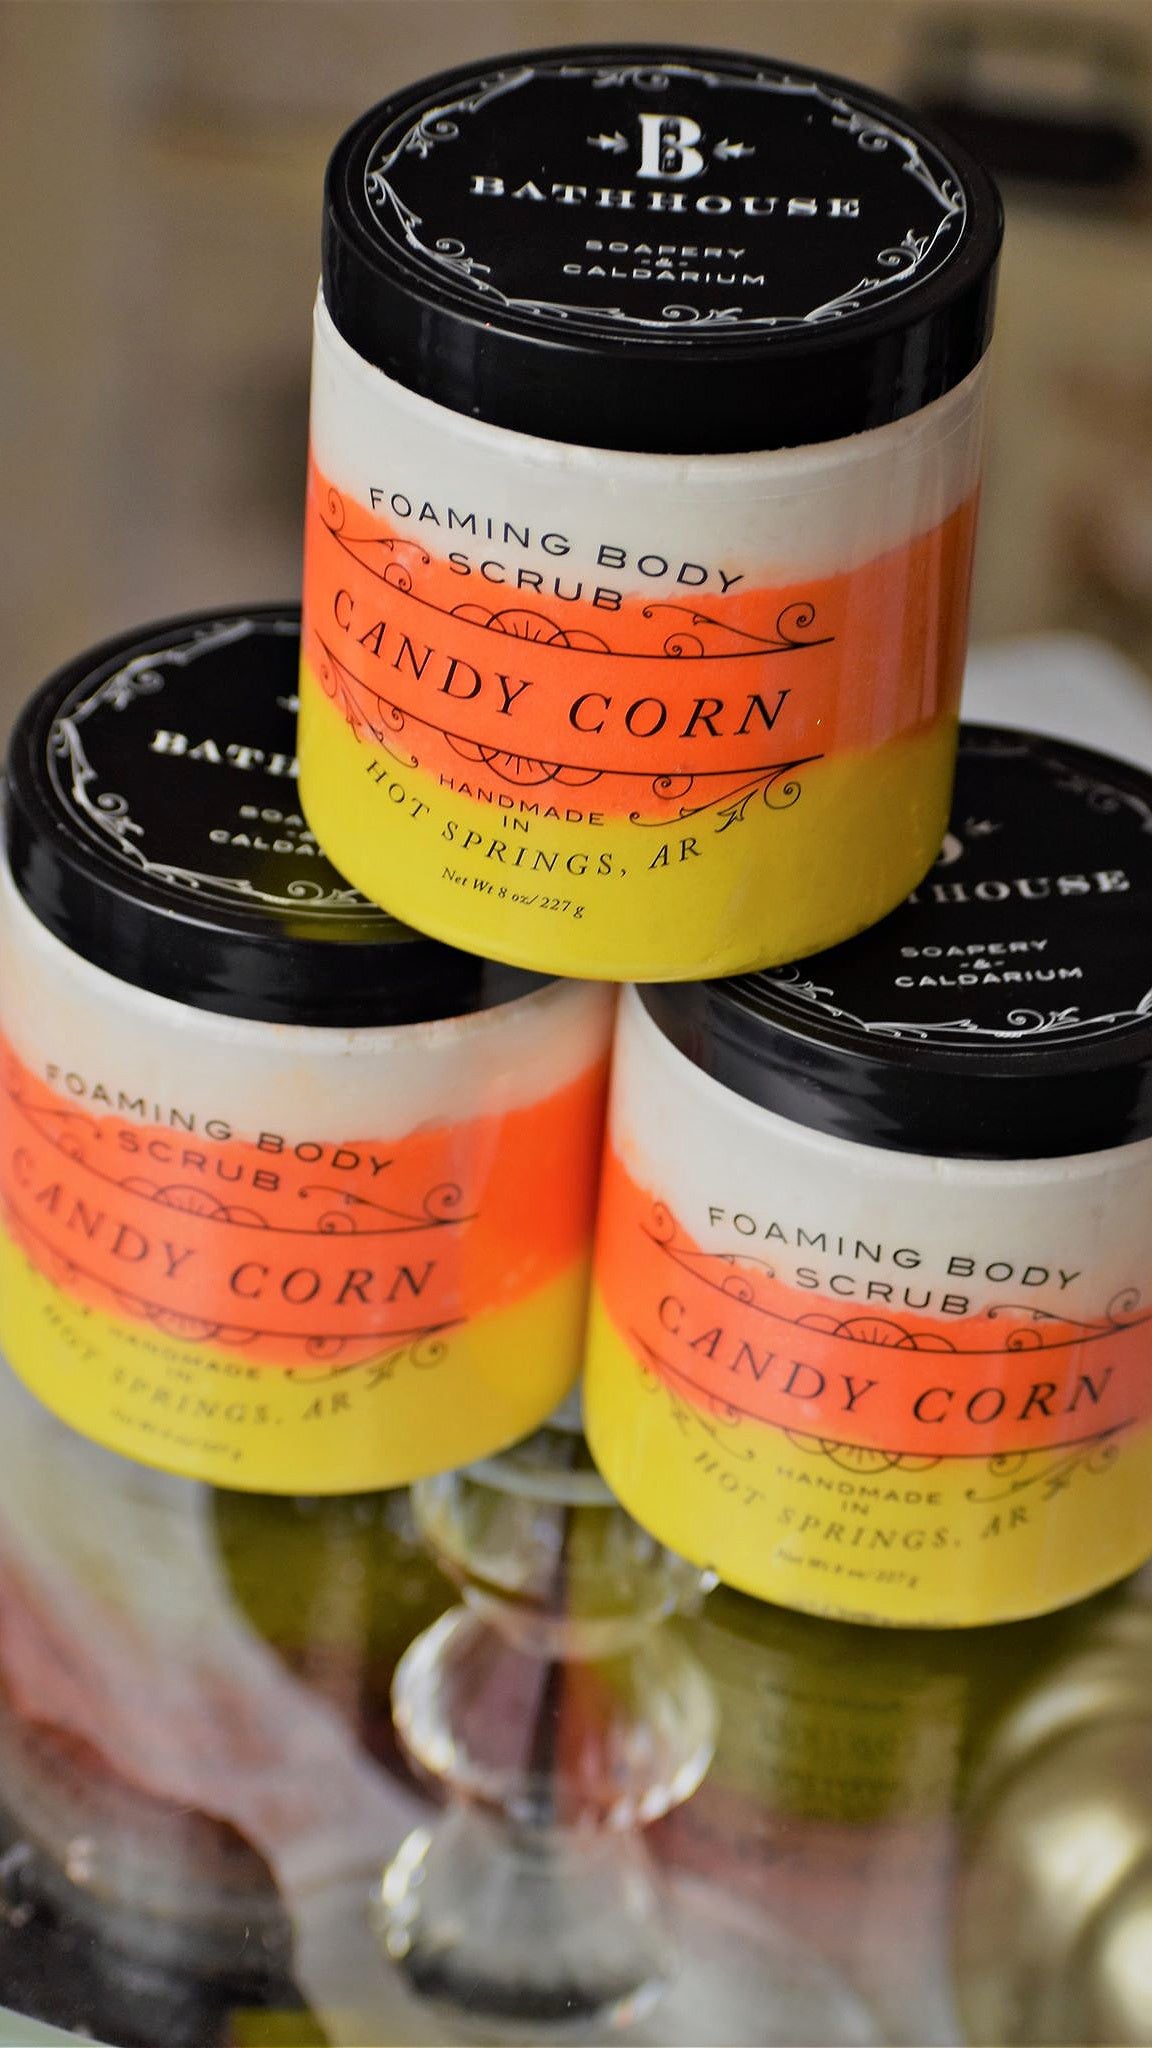 Candy Corn Foaming Body Scrub (Limited Edition)